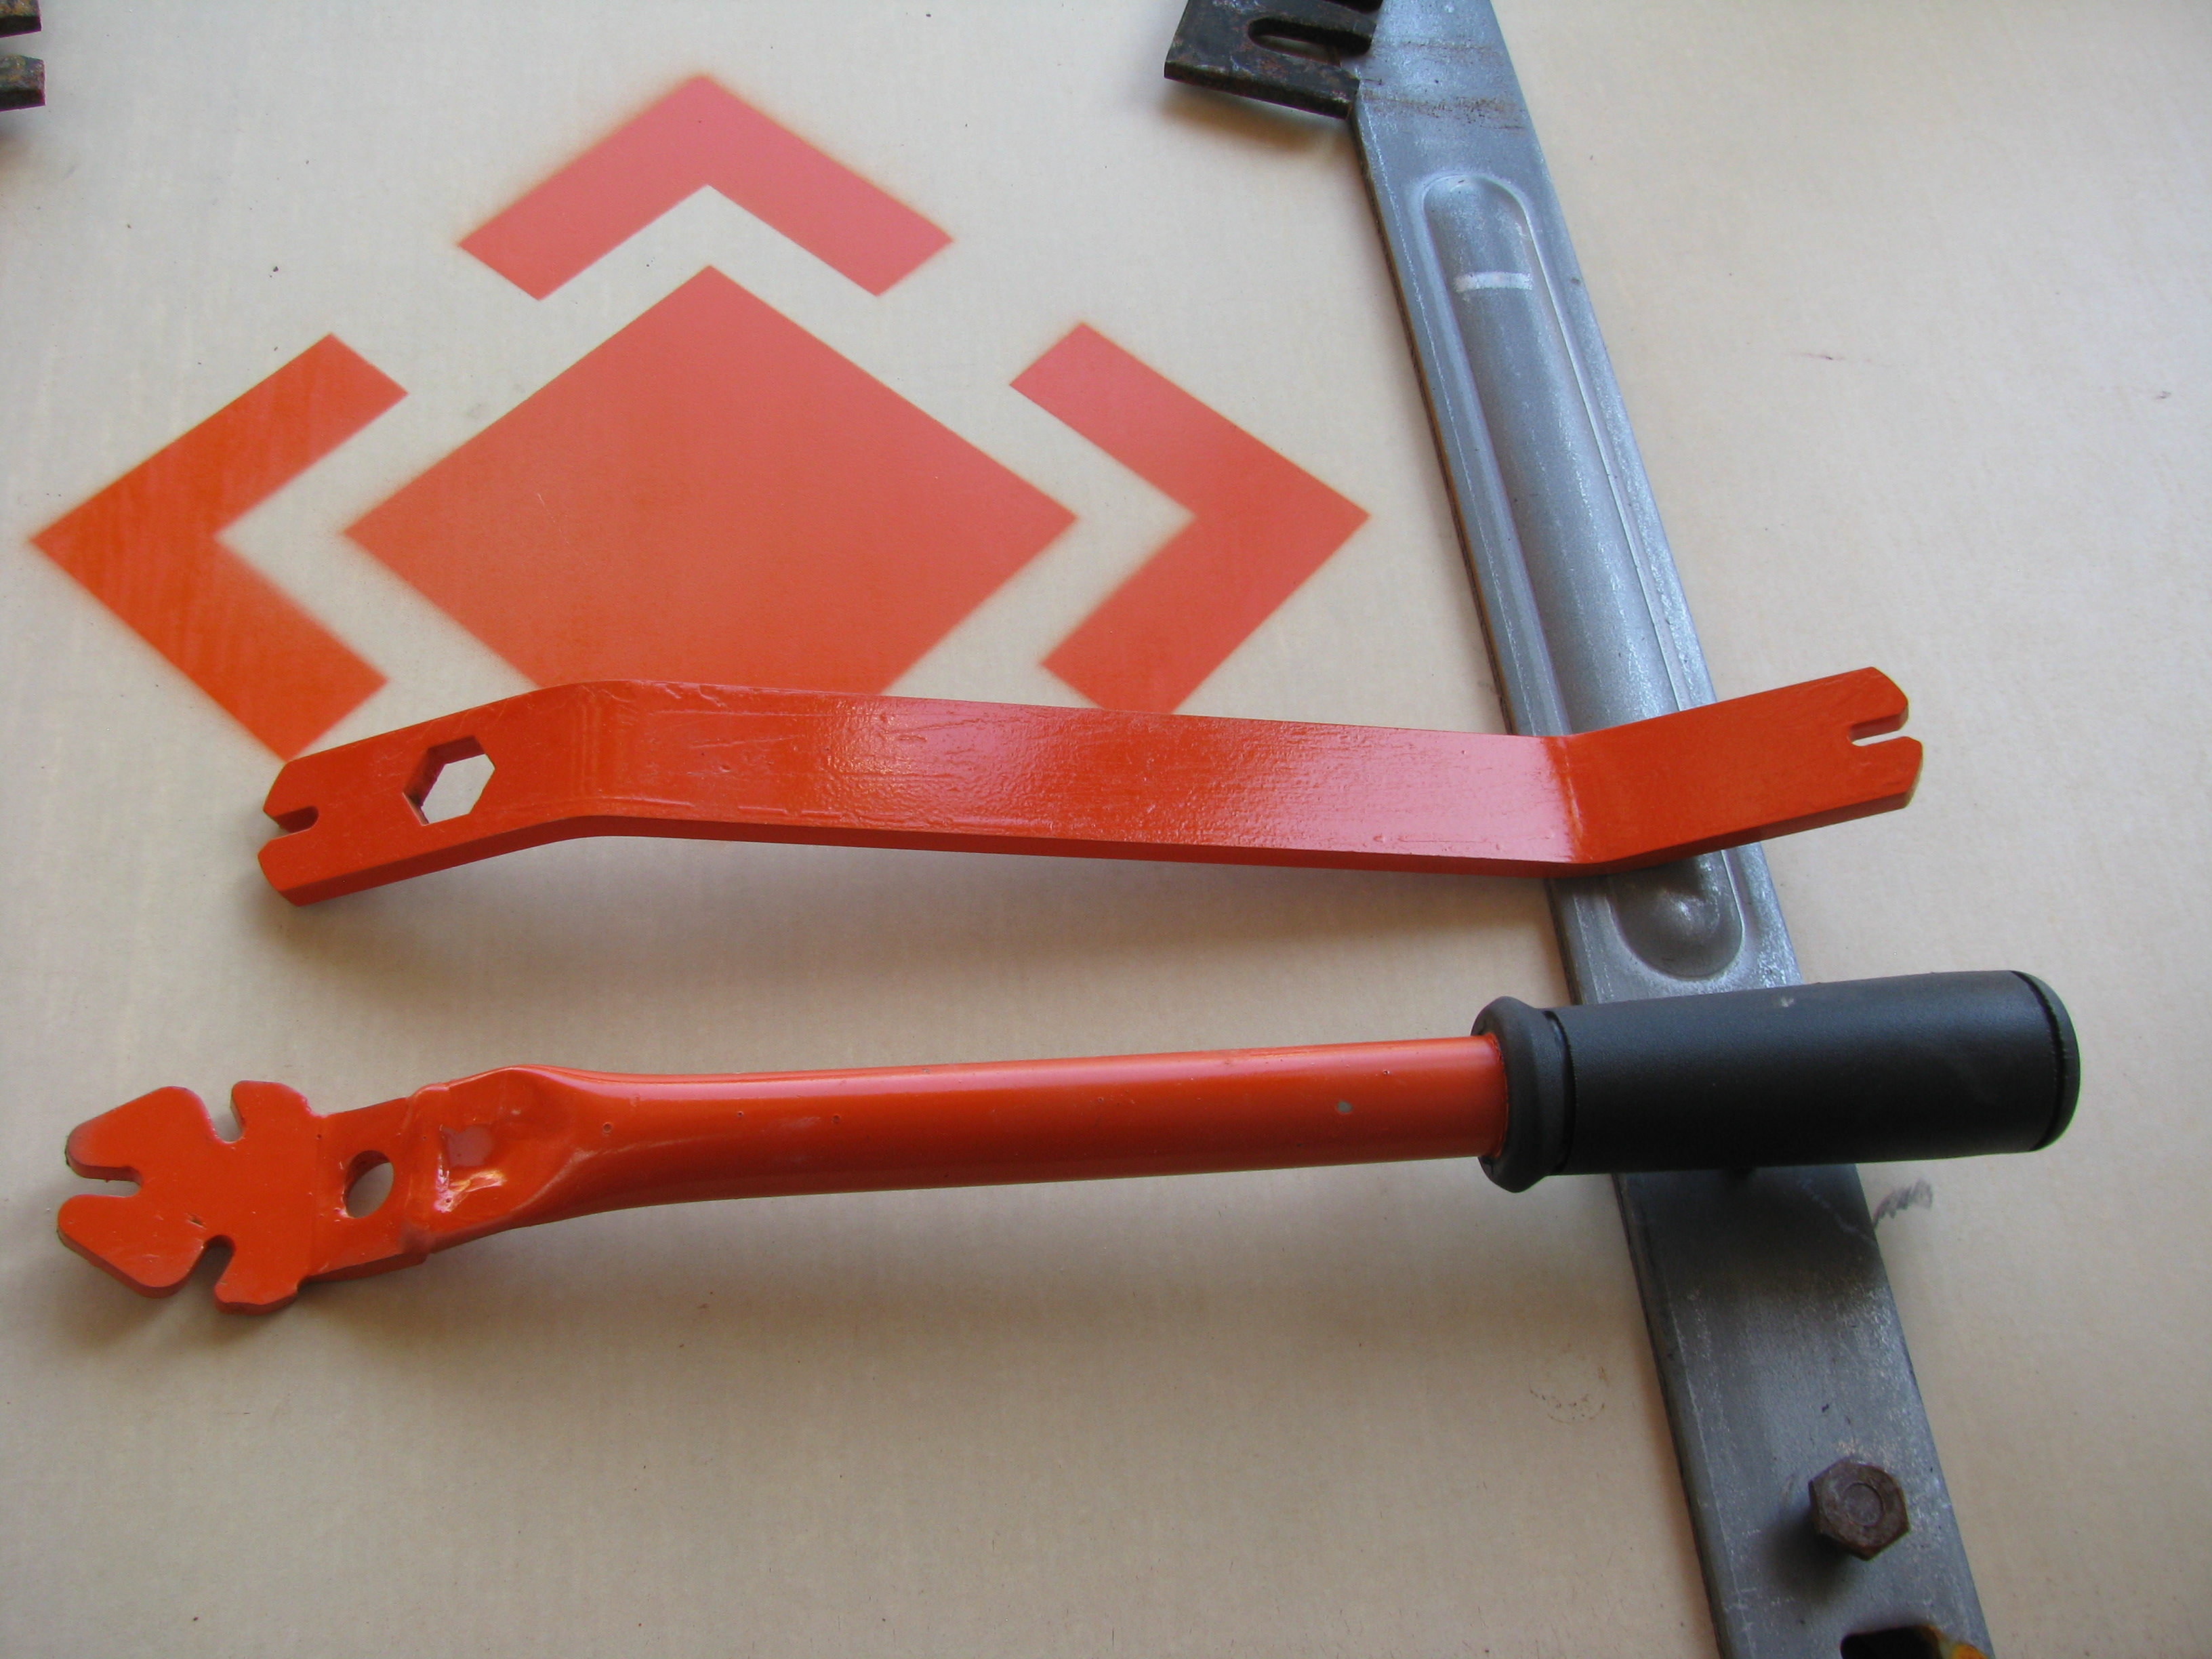 Regular and rubber tie break-off tool